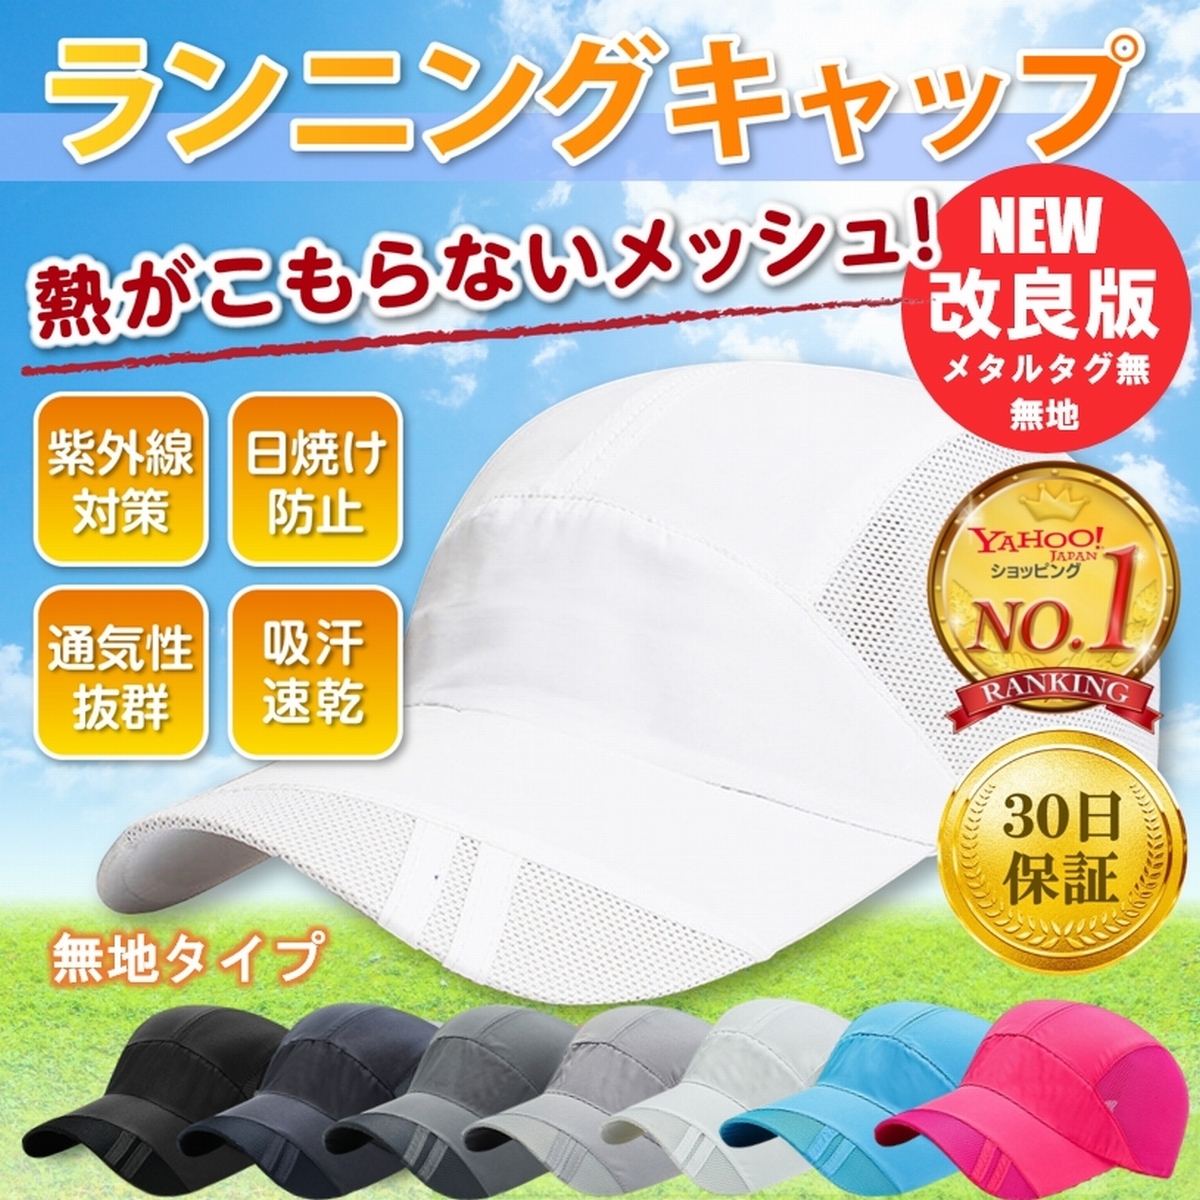  бег колпак колпак довольно большой одноцветный шляпа мужской женский сетка спорт колпак размер регулировка UV cut 